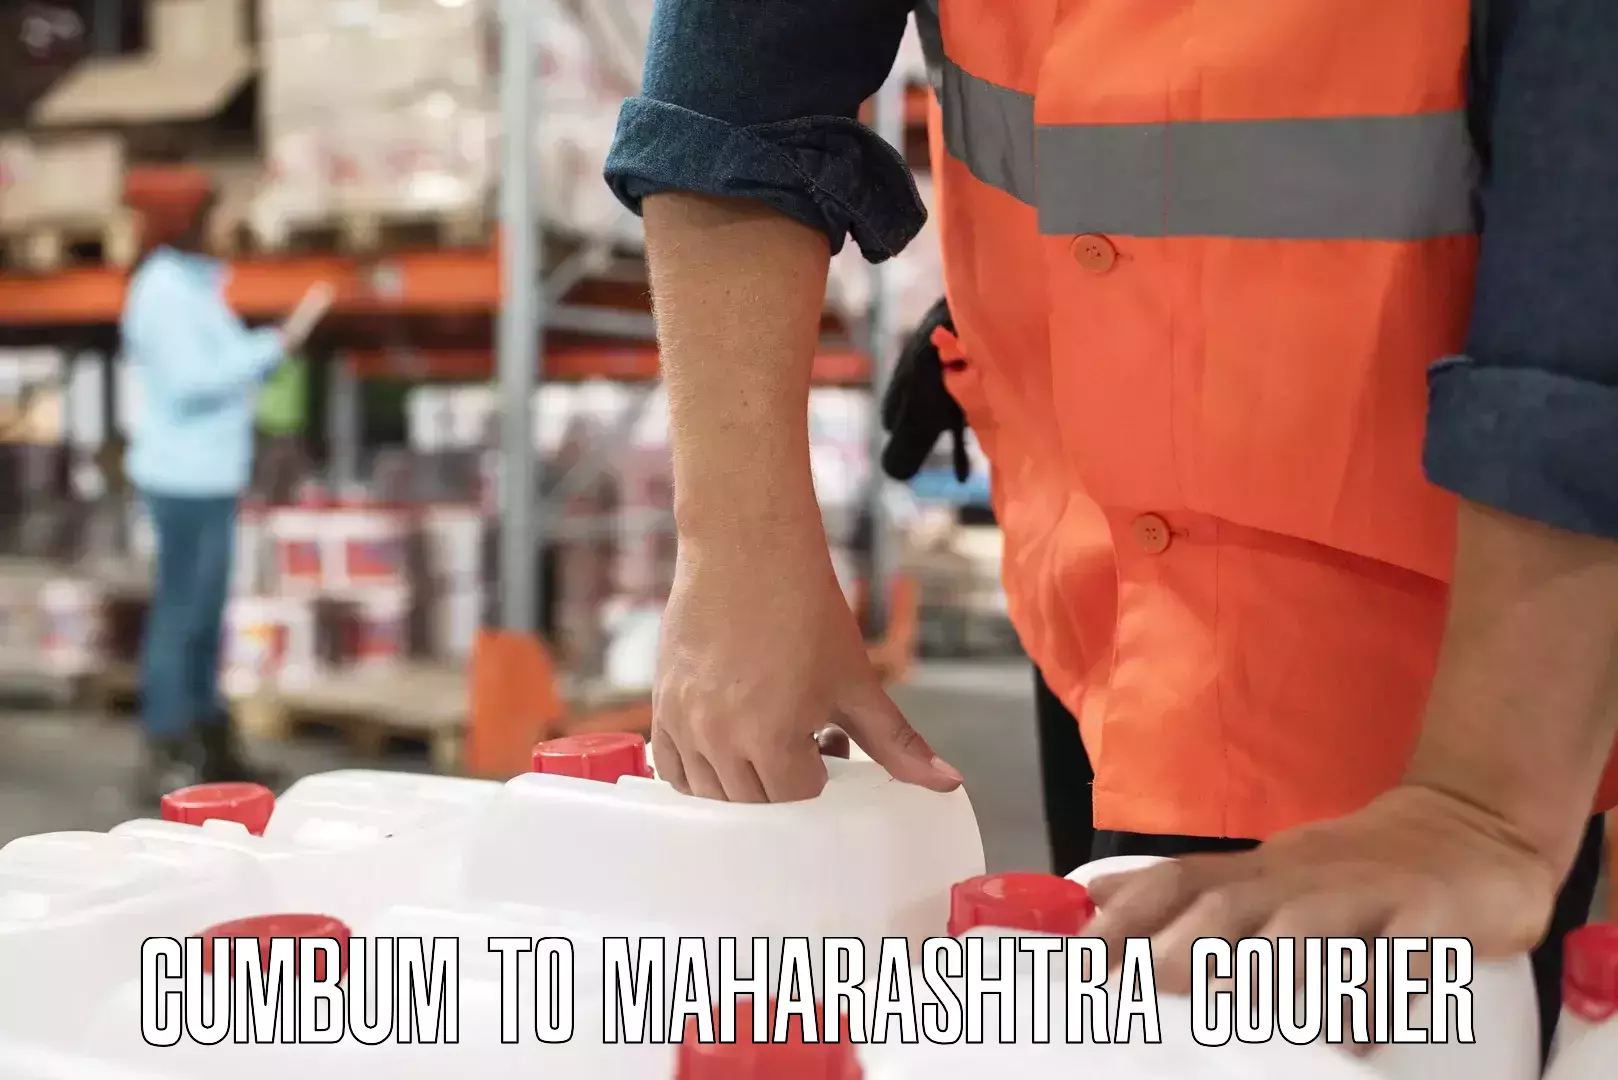 24-hour courier services Cumbum to Raigarh Maharashtra